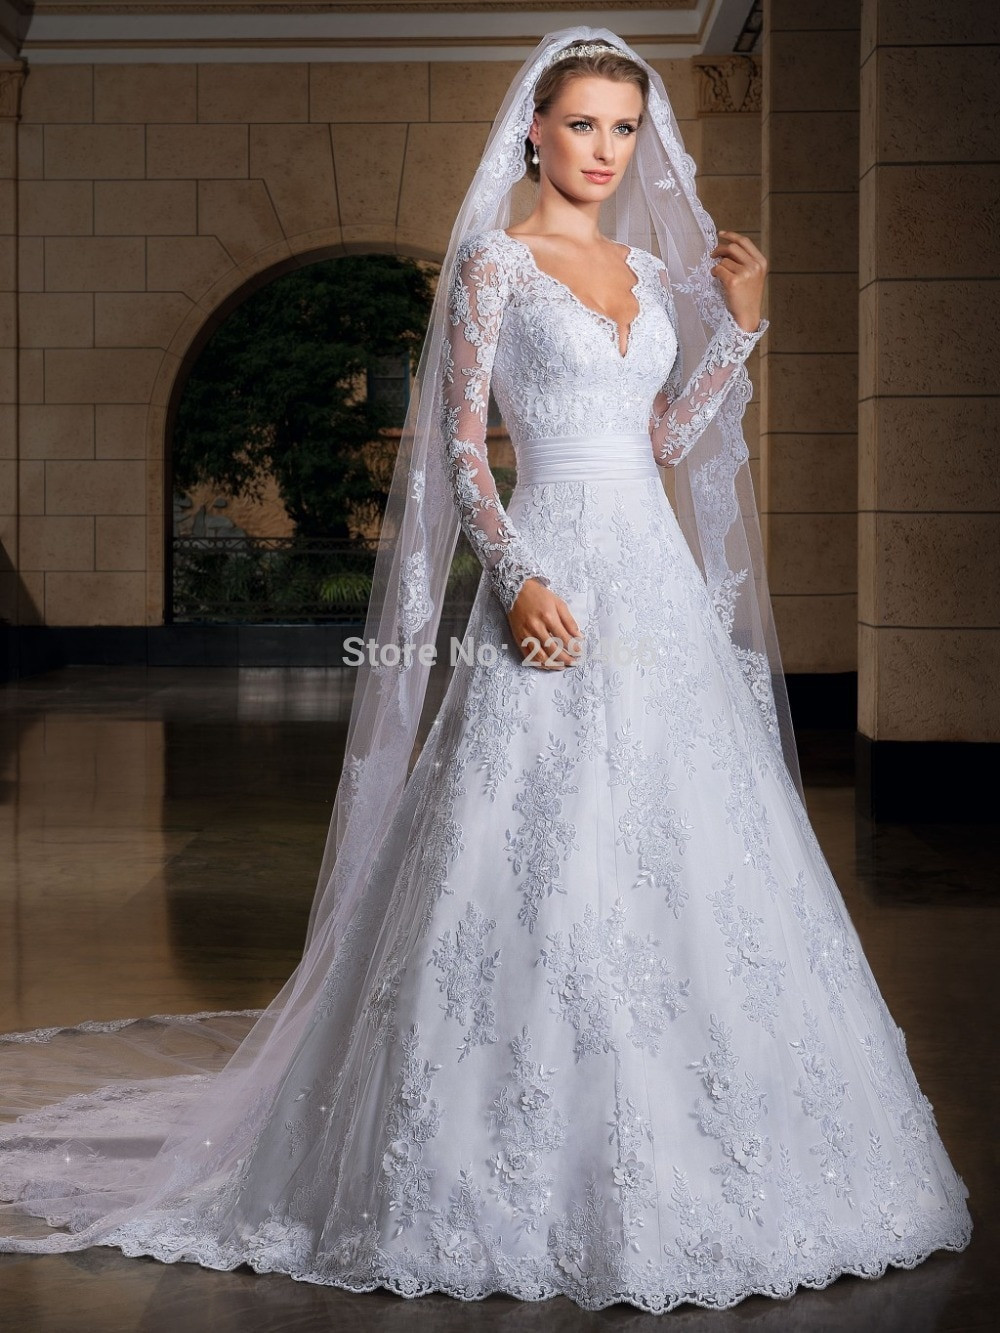 Veil In Wedding
 Free shipping WEdding Dress Bridal Veil Wedding